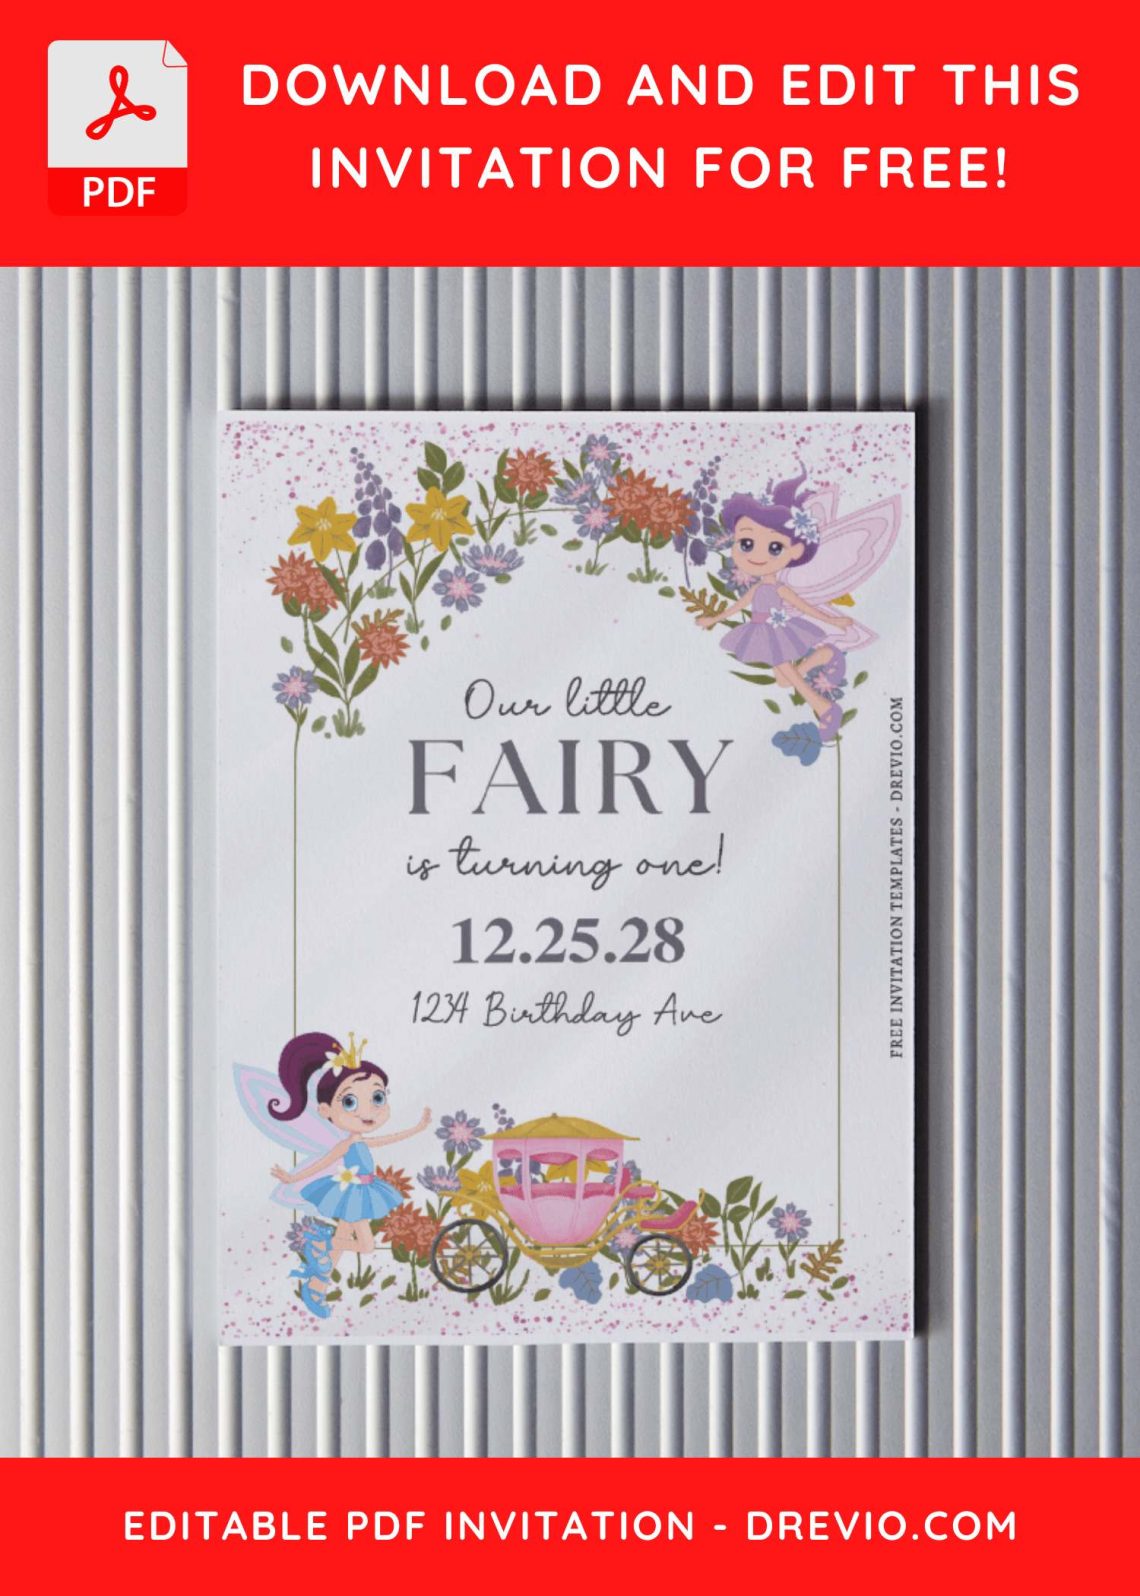 (Free Editable PDF) Fairy Wonderland Birthday Invitation Templates